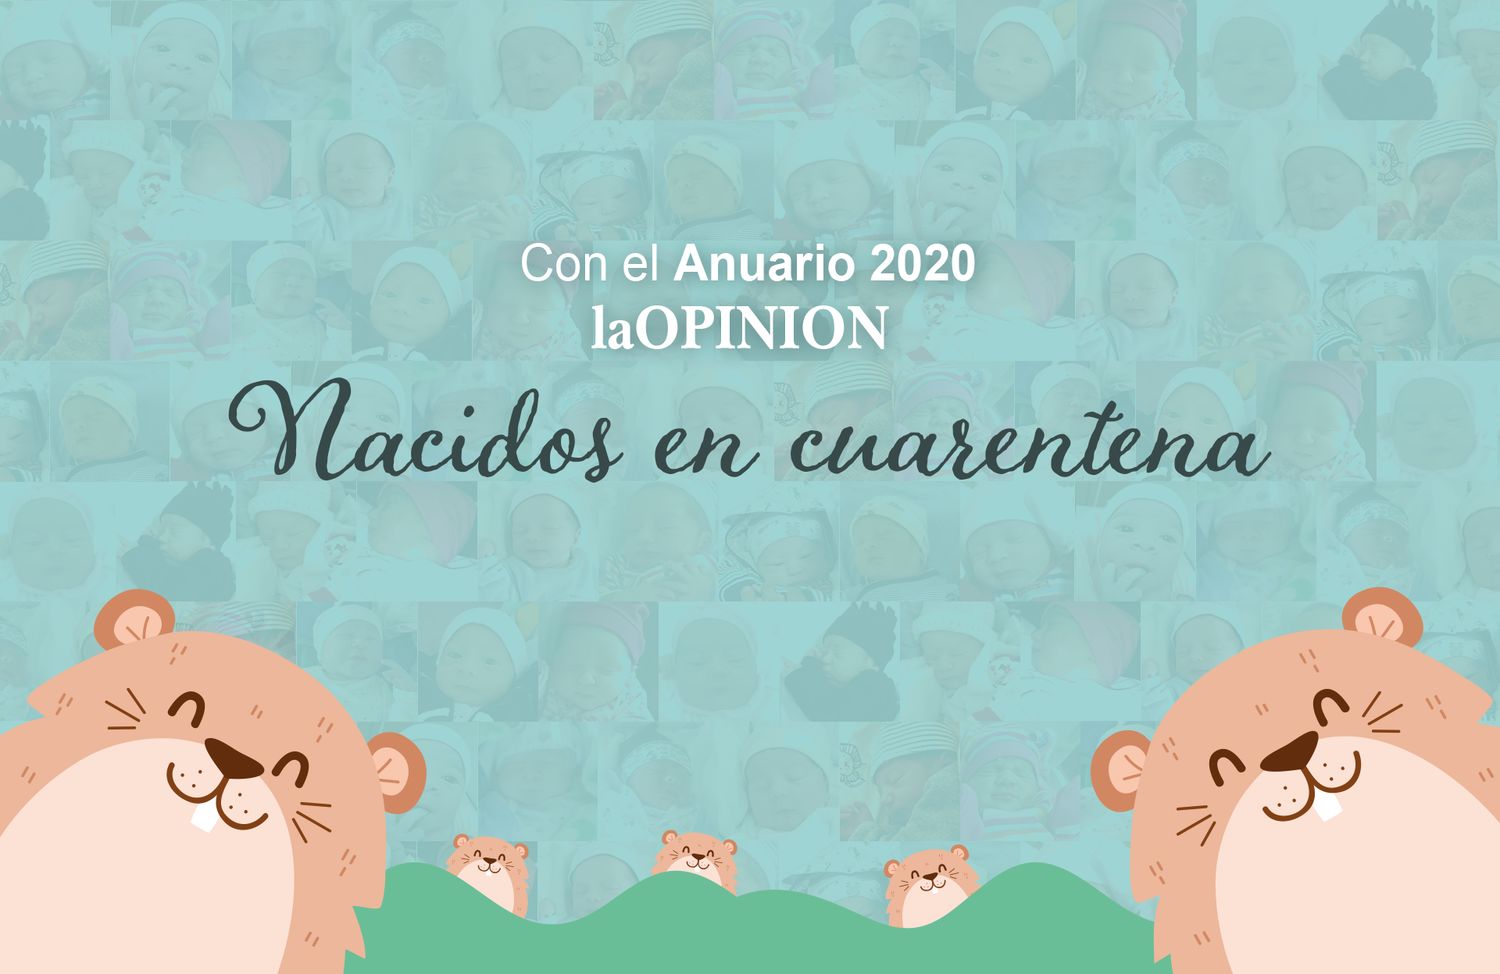 El anuario de La Opinión 2020 trae todos los bebés nacidos en cuarentena